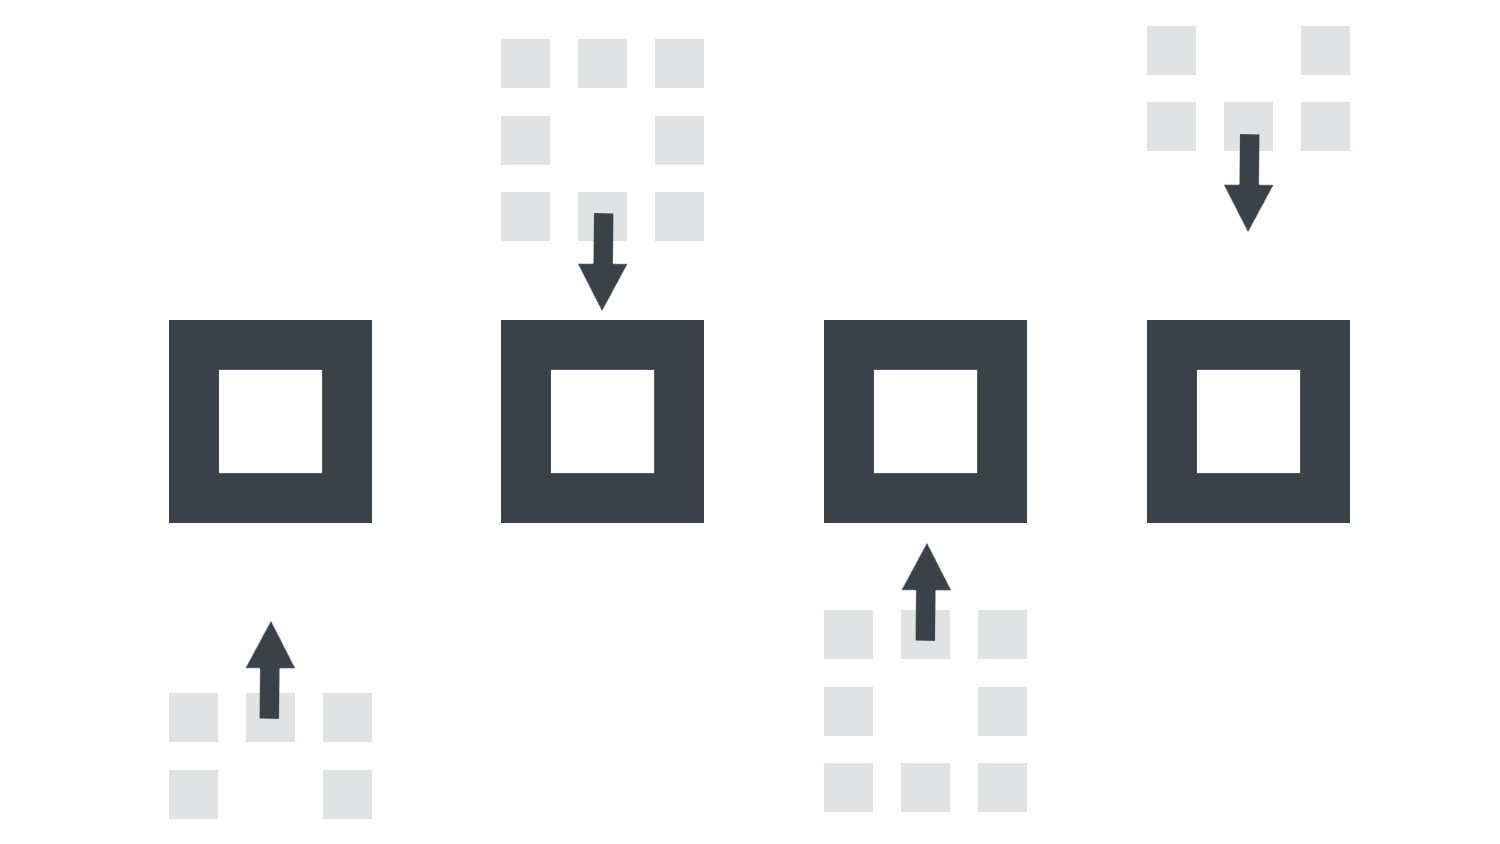 3-09　|　整列の使い方：図形の位置を揃える＆均等配置する方法